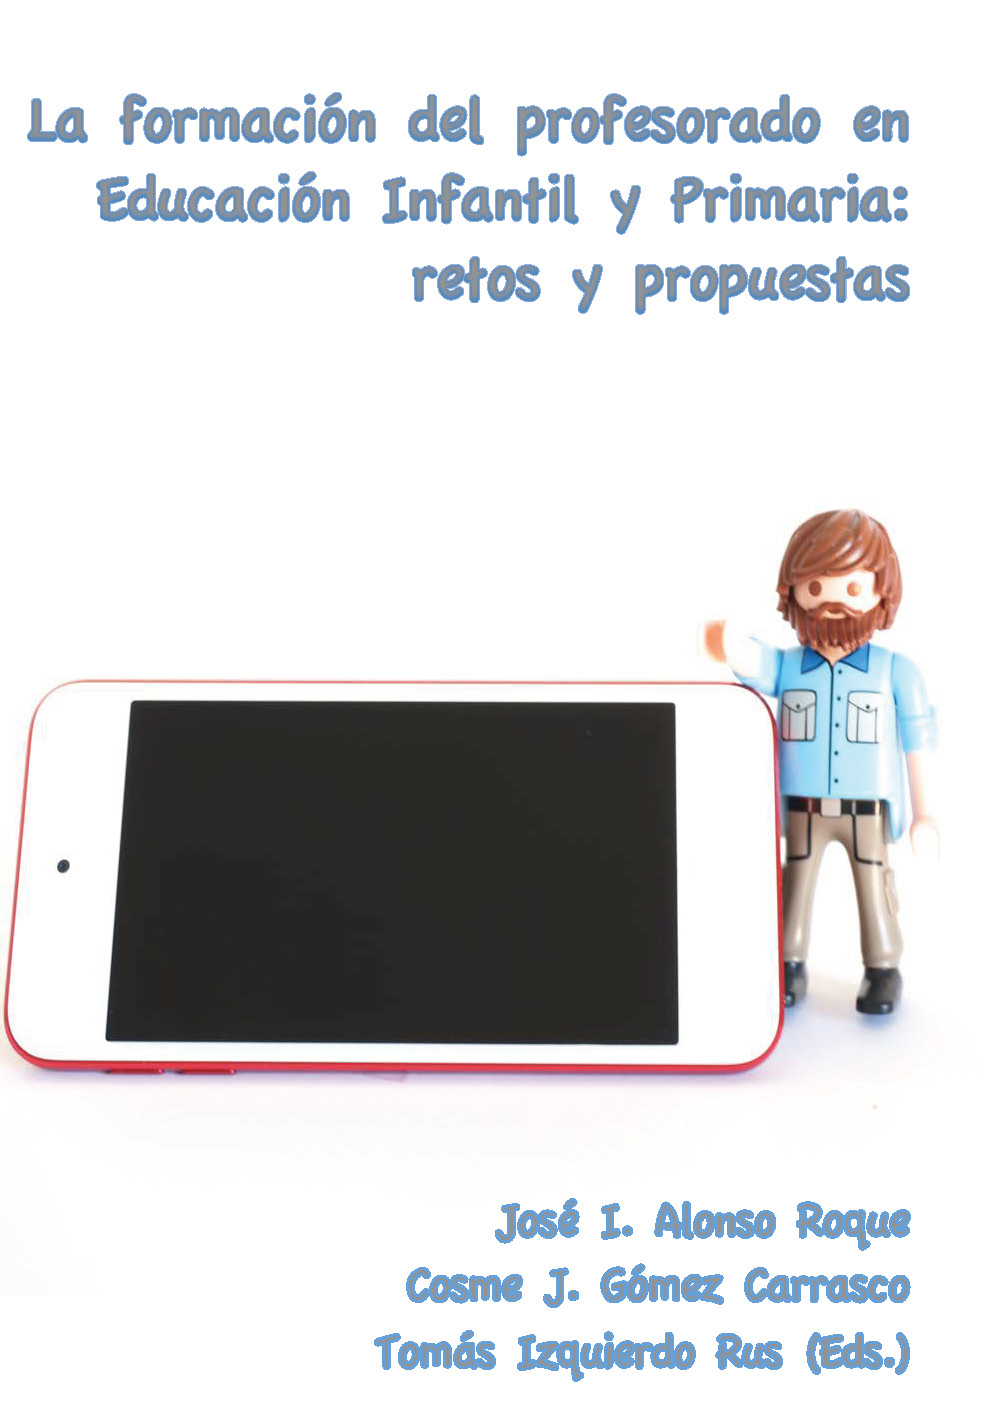 Imagen de portada del libro La formación del profesorado en Educación Infantil y Primaria